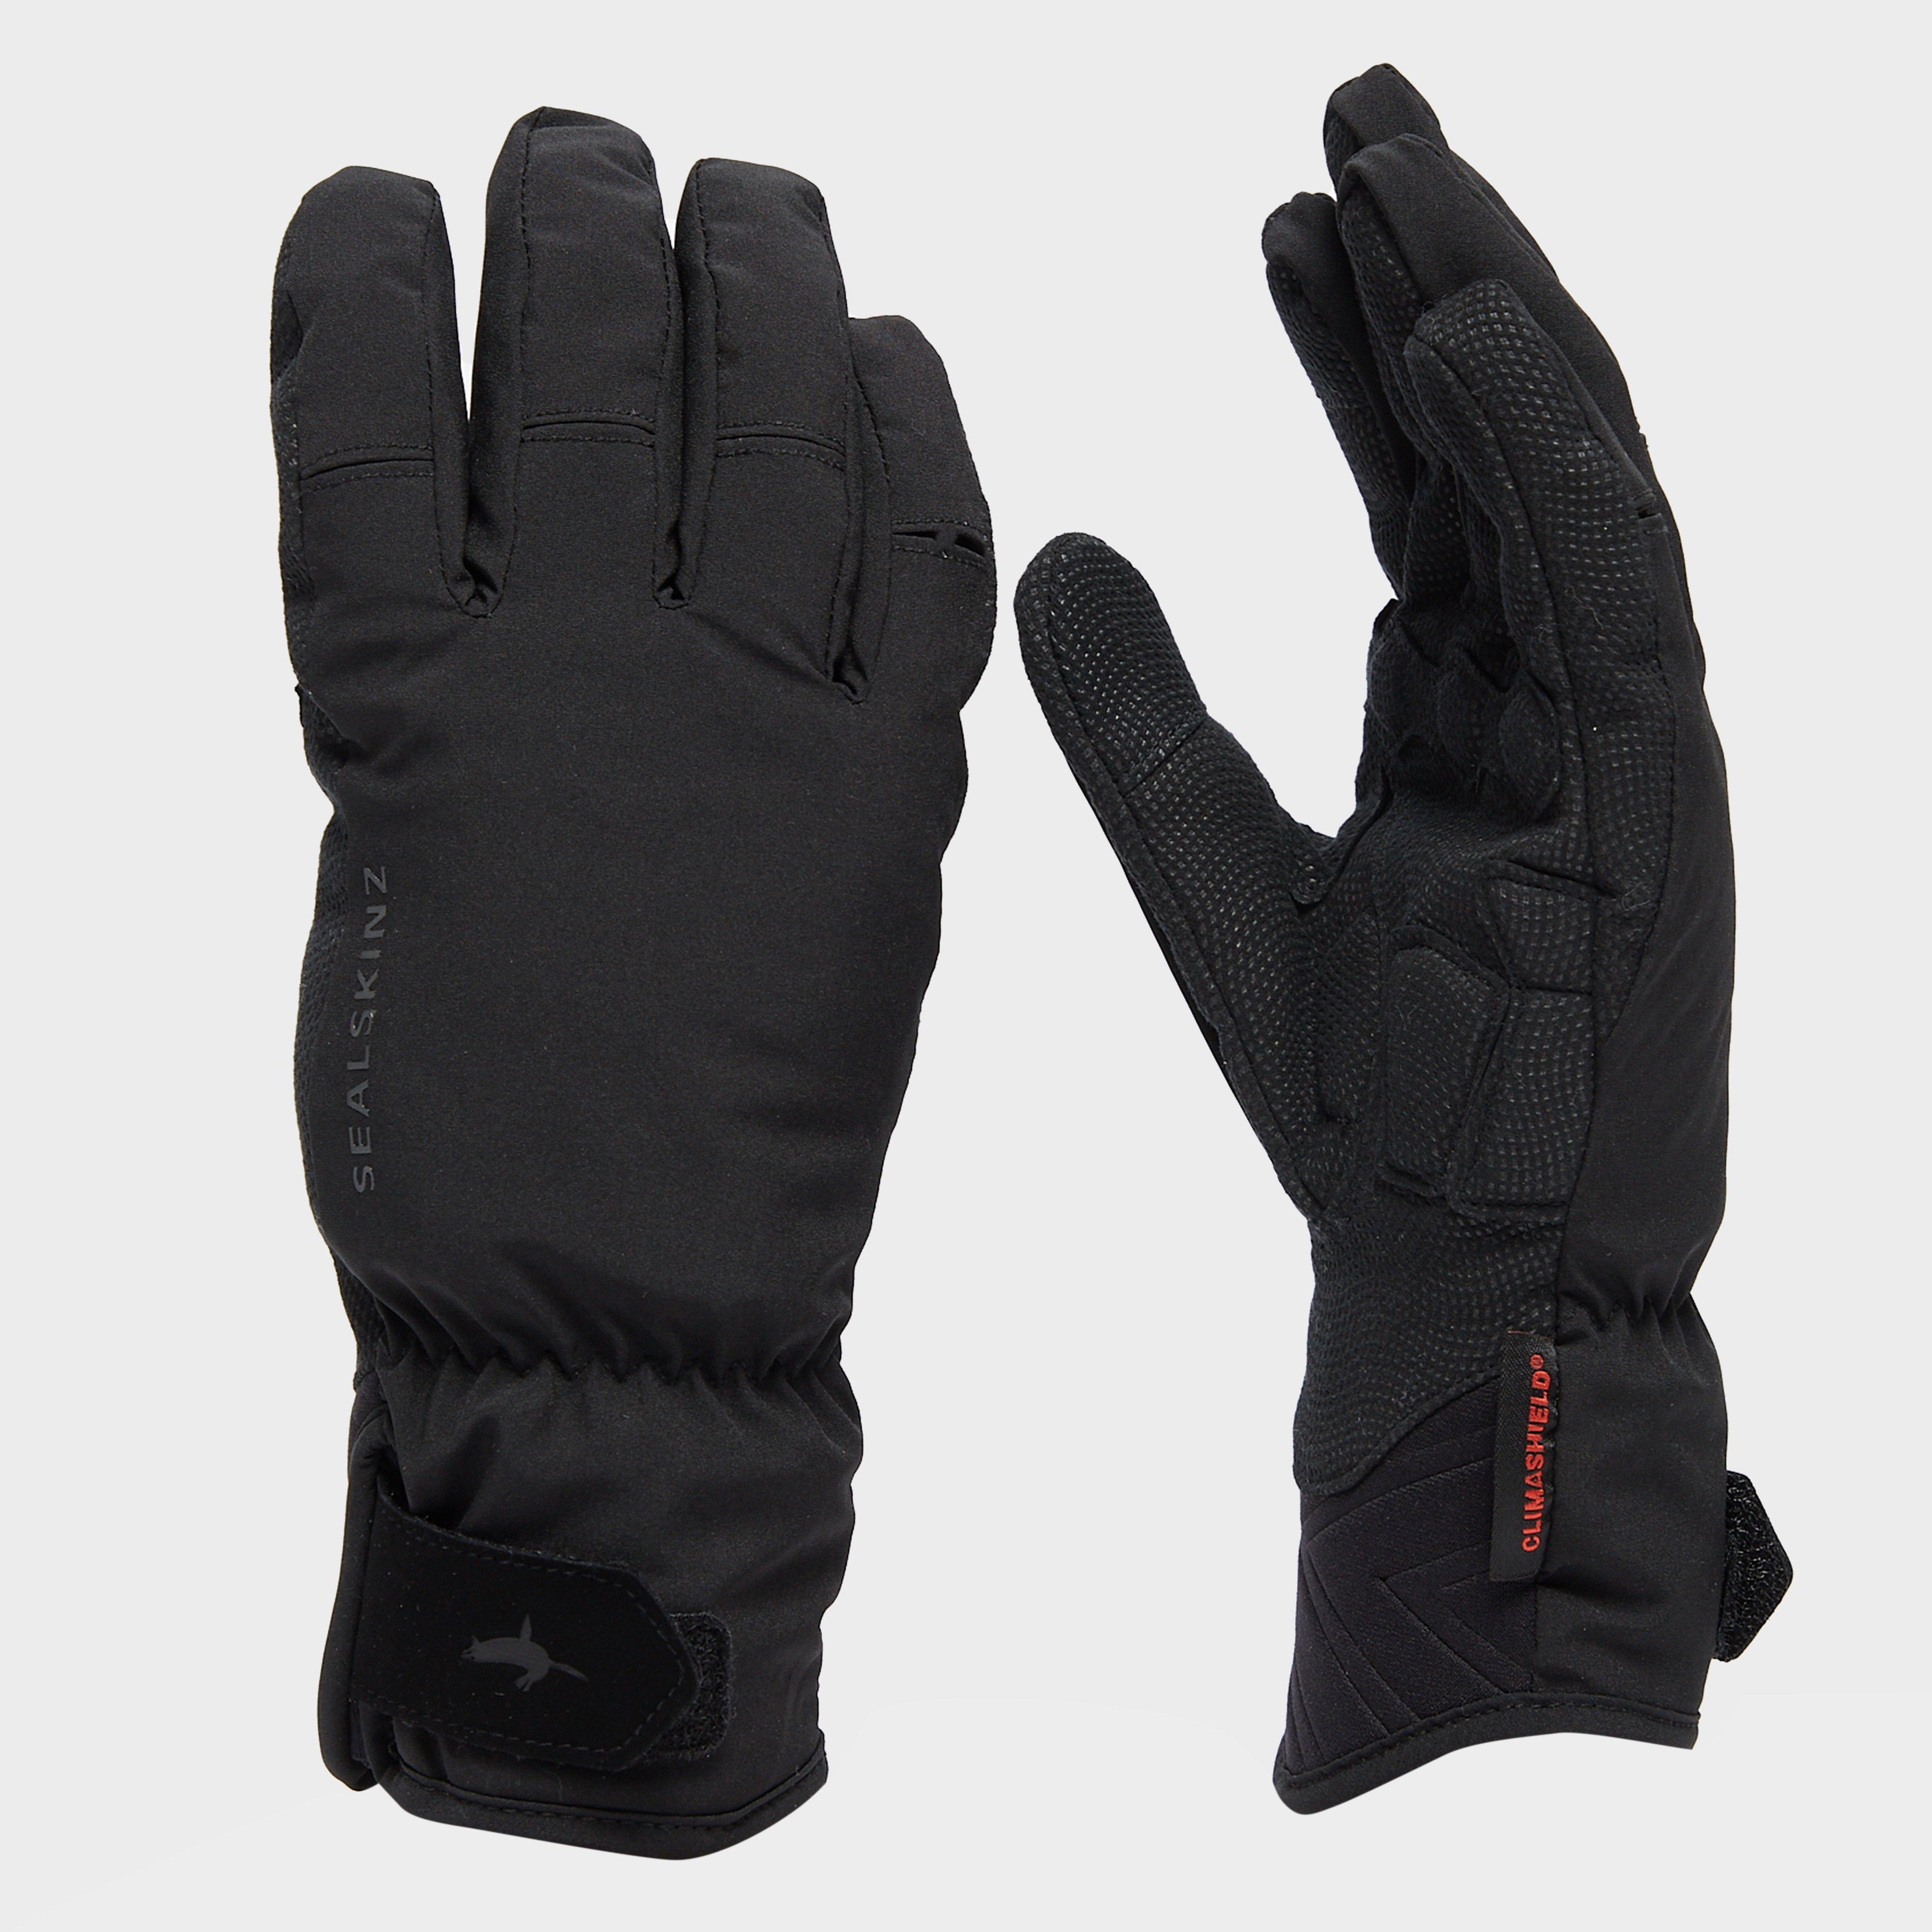 Sealskinz Highland Gloves - Blk/blk  Blk/blk